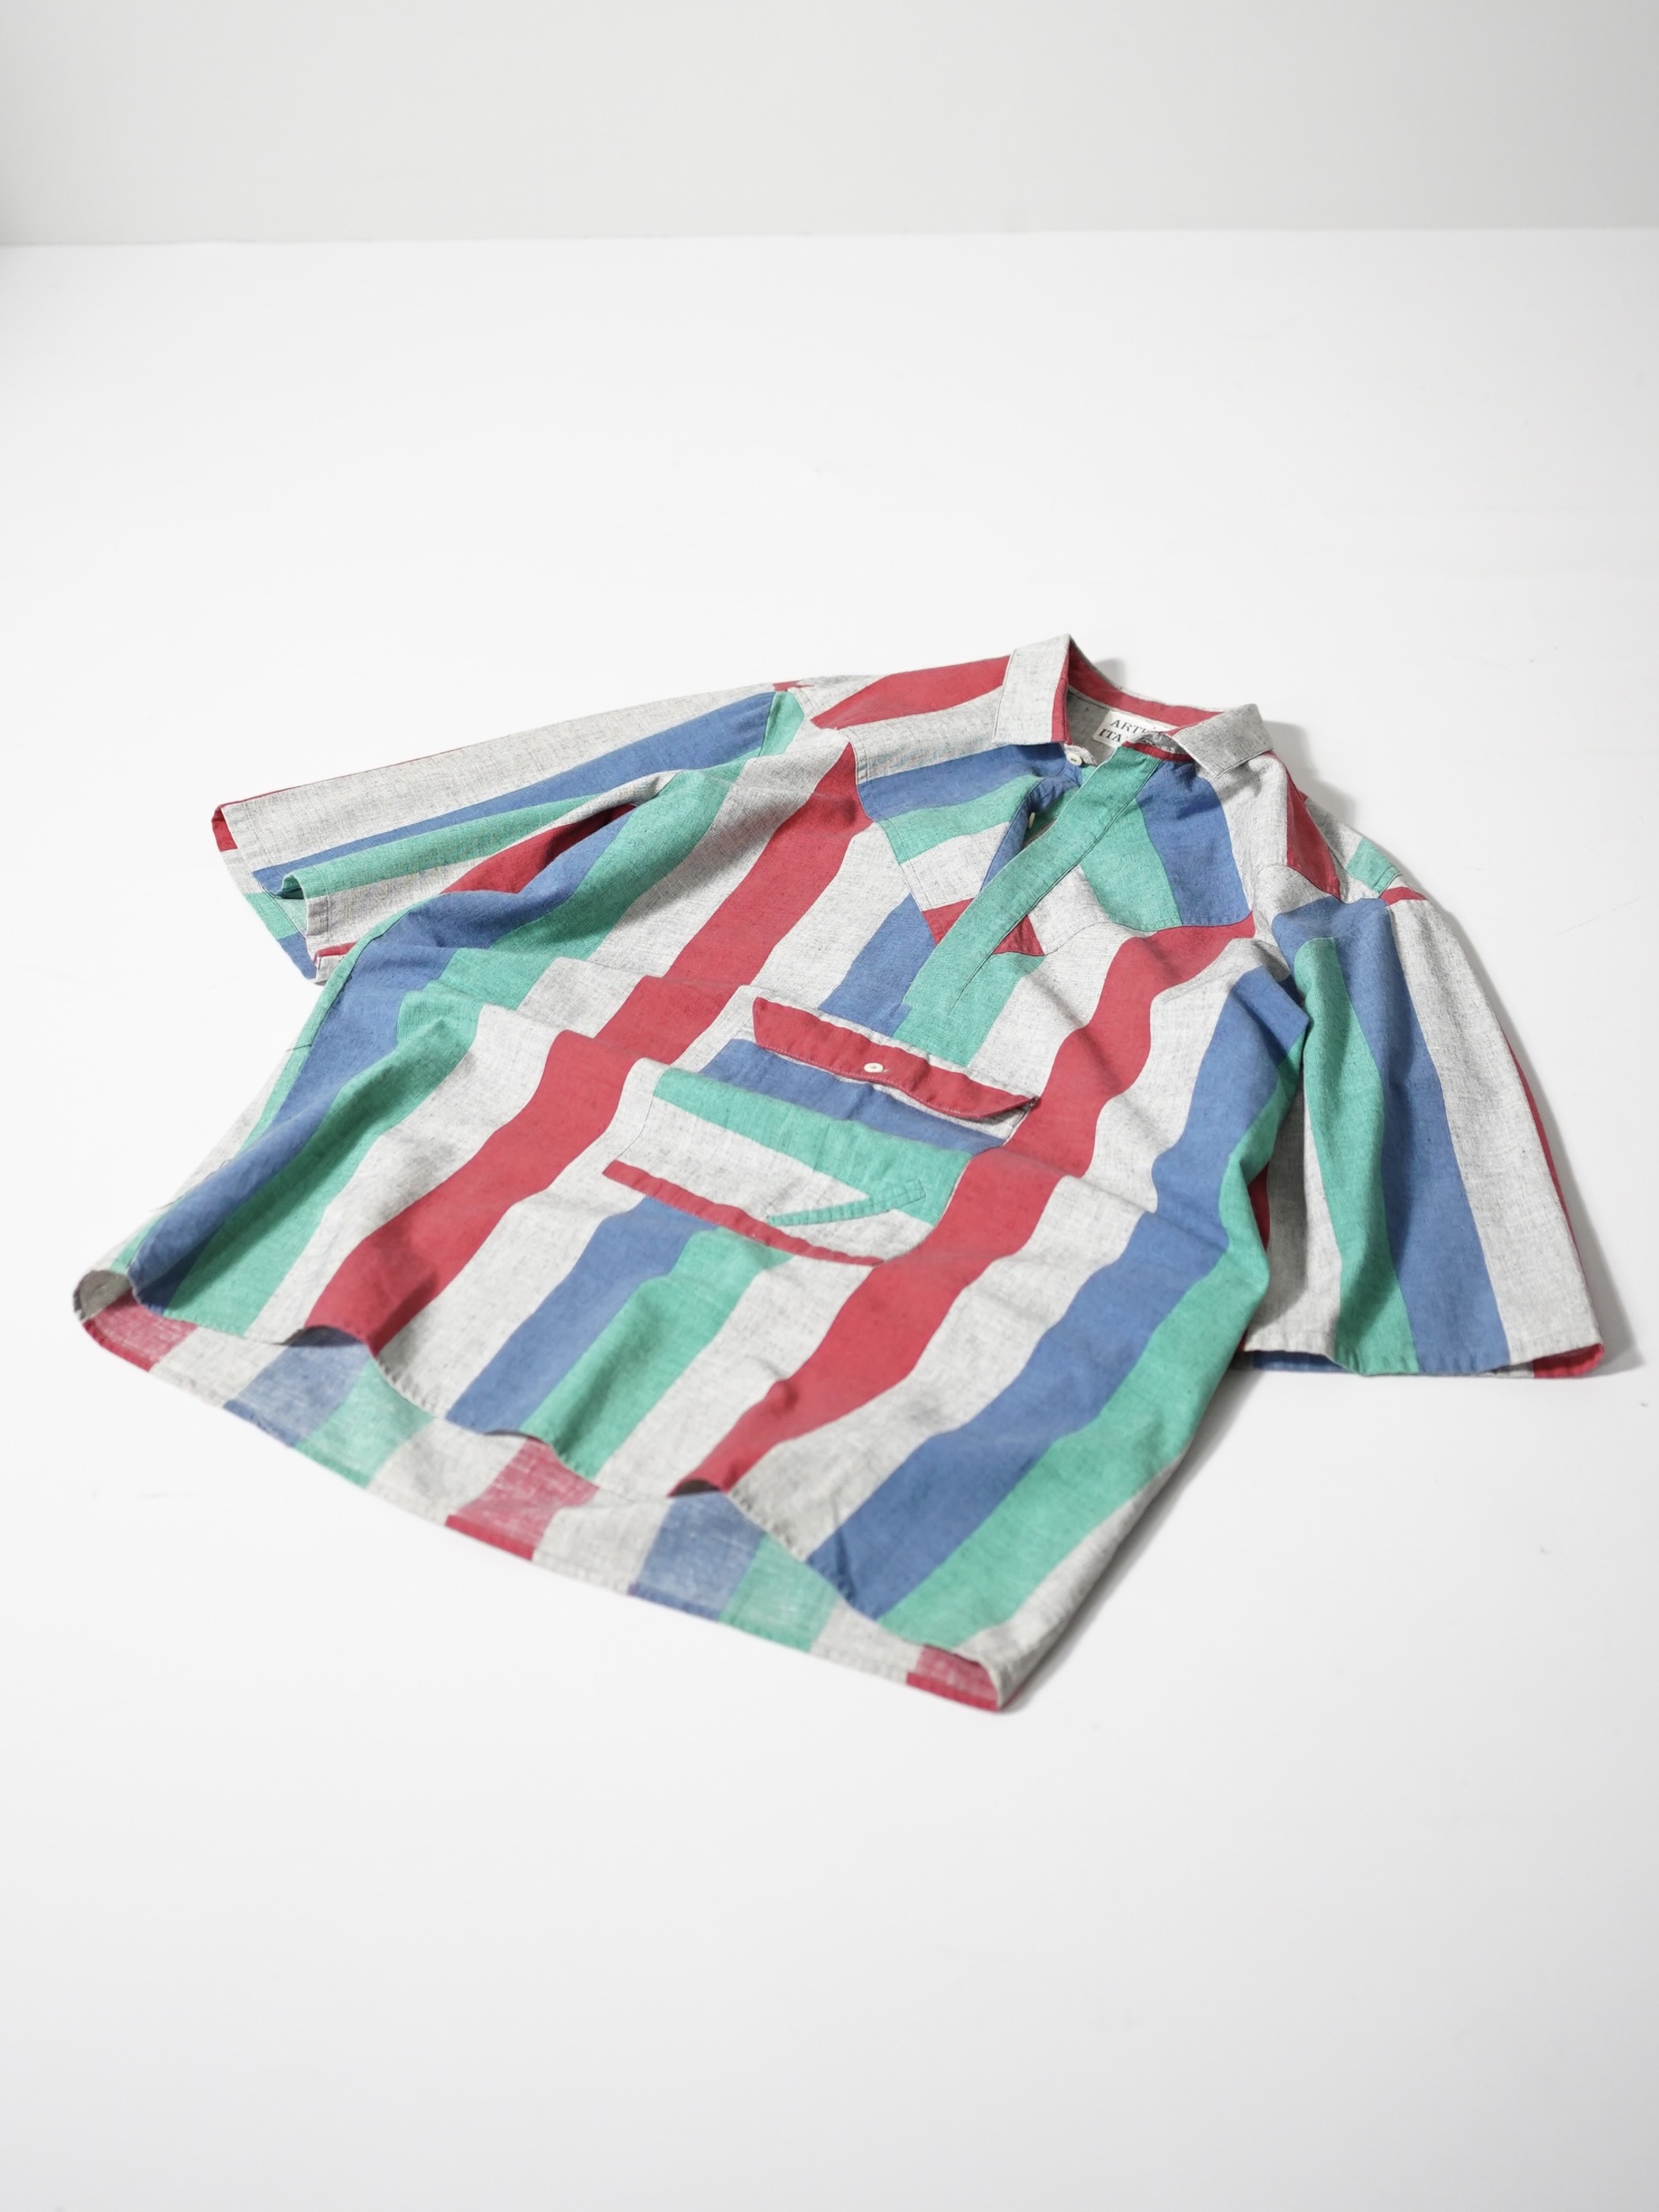 ARTISTI ITALIANI Design pocket S/S shirts / Made in Italy